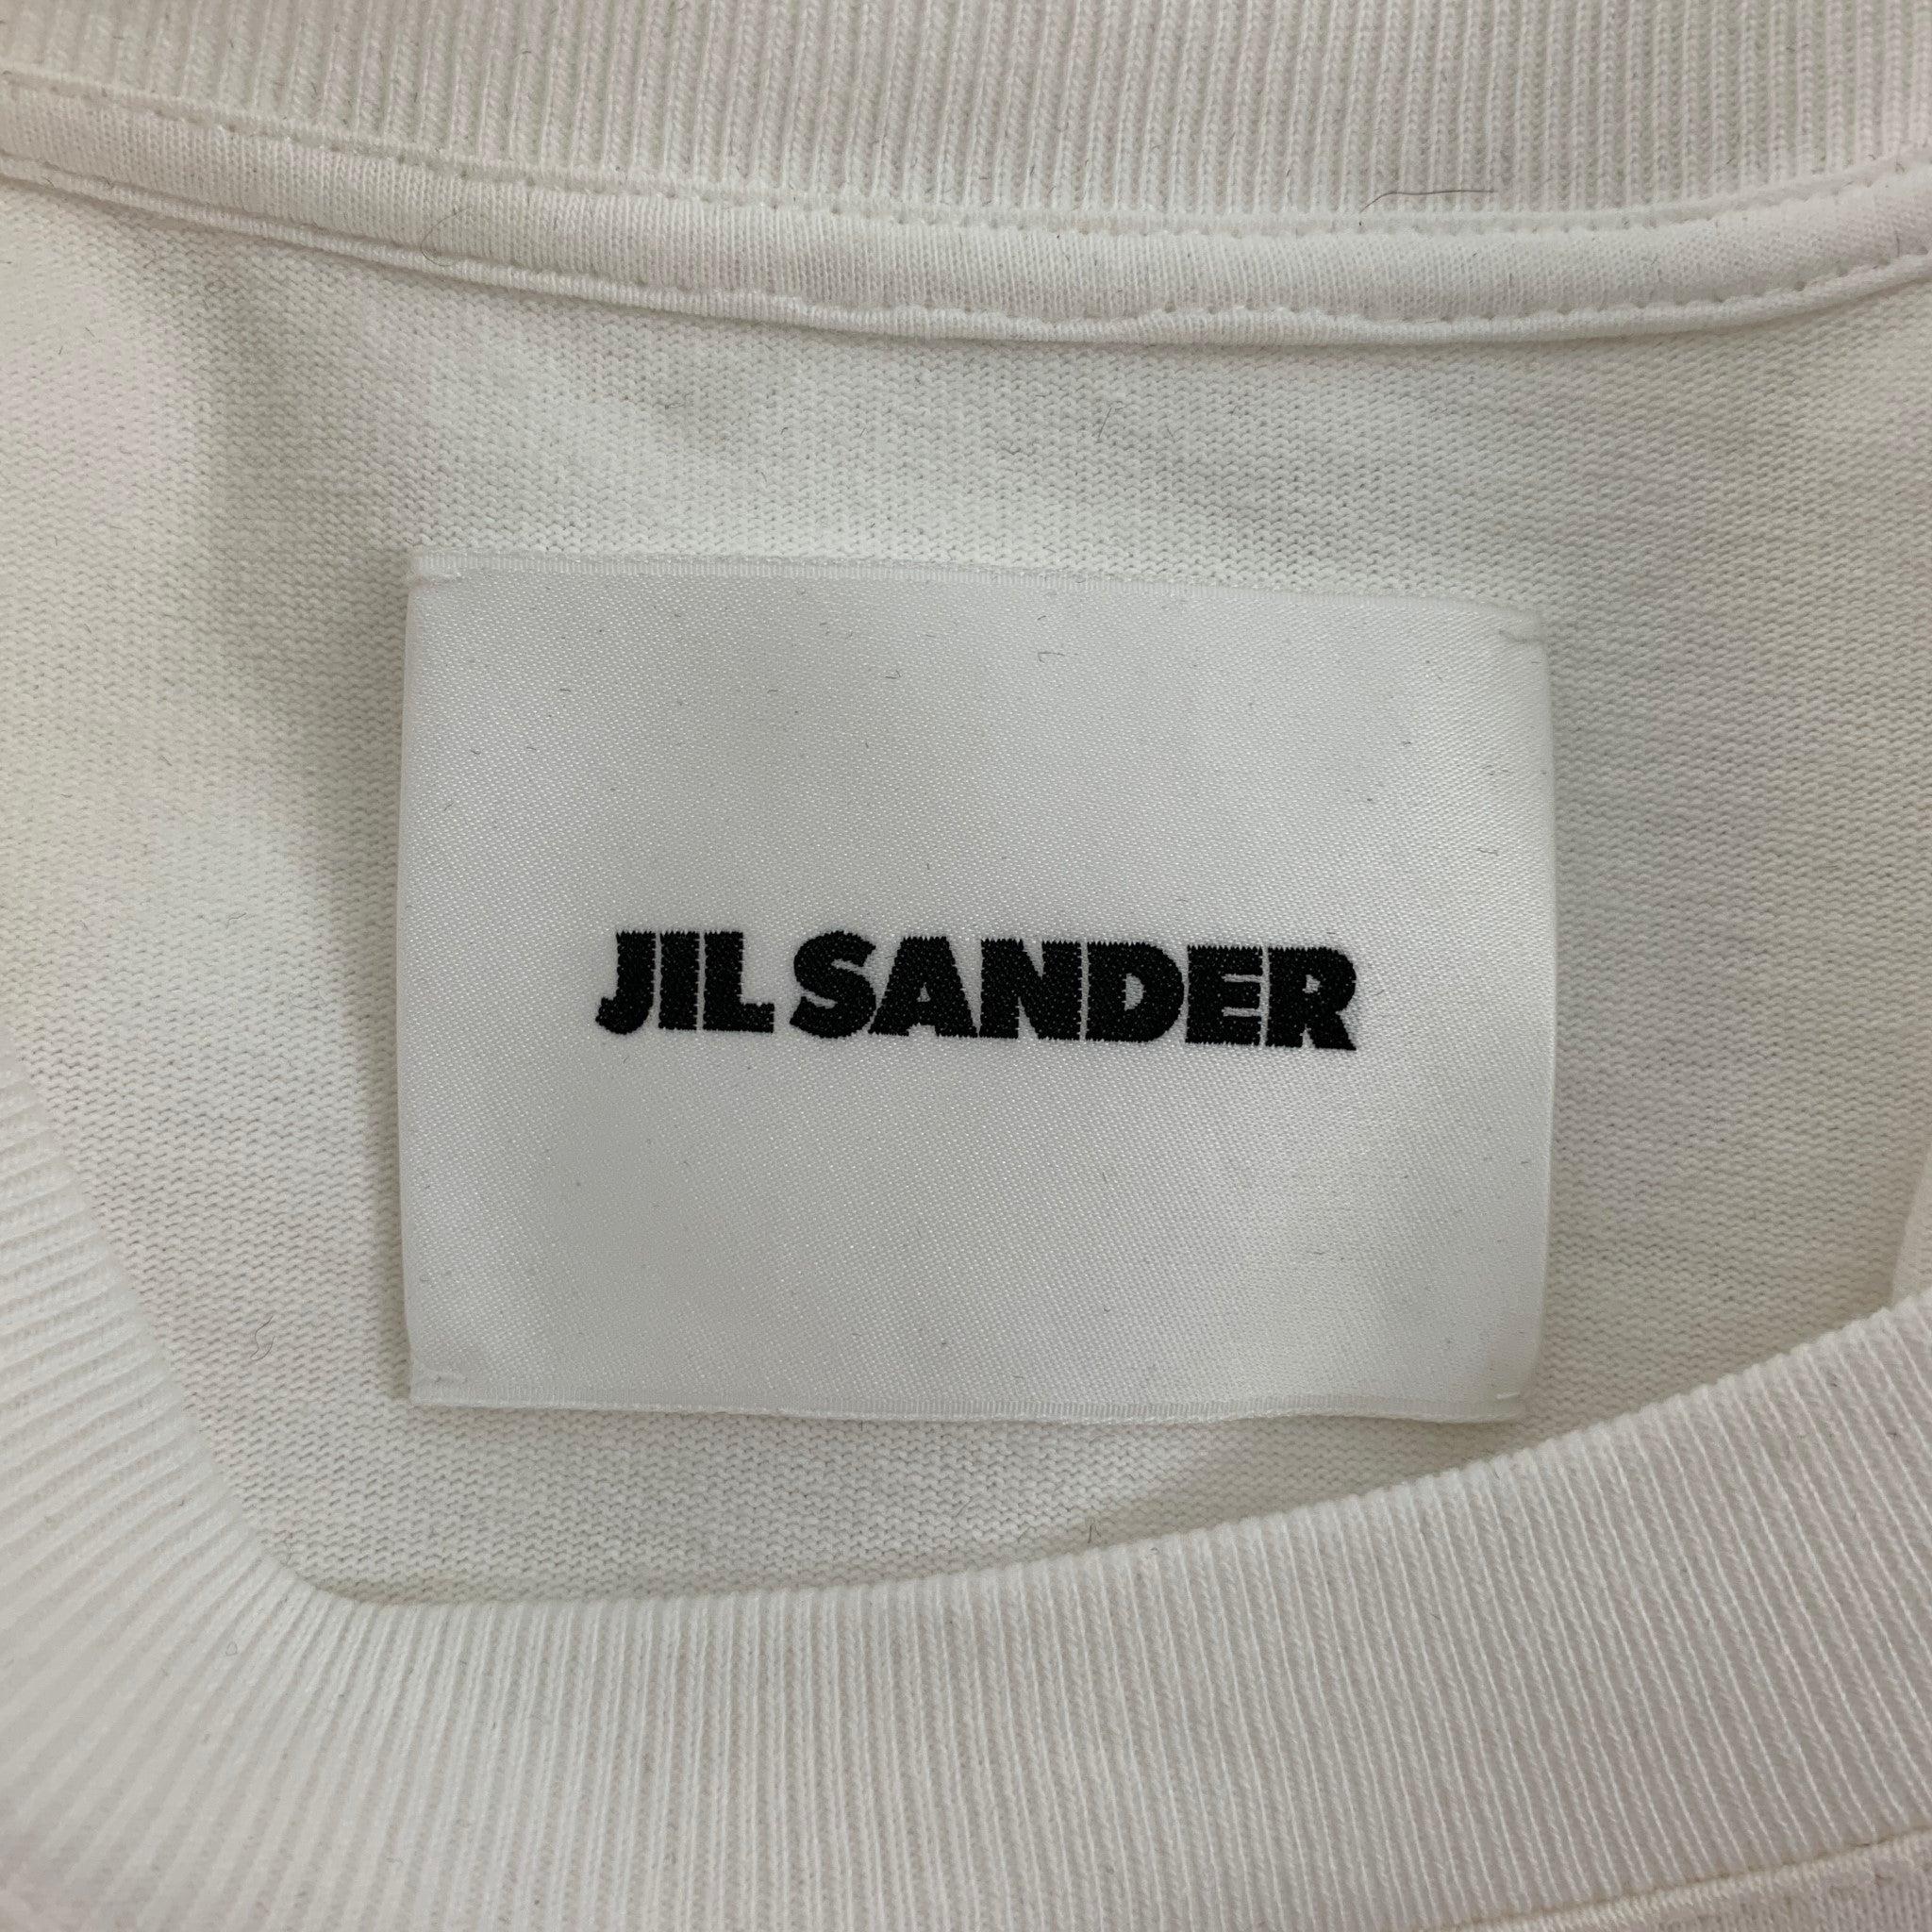 JIL SANDER - T-shirt à manches courtes en coton blanc et rouge, taille XL 1